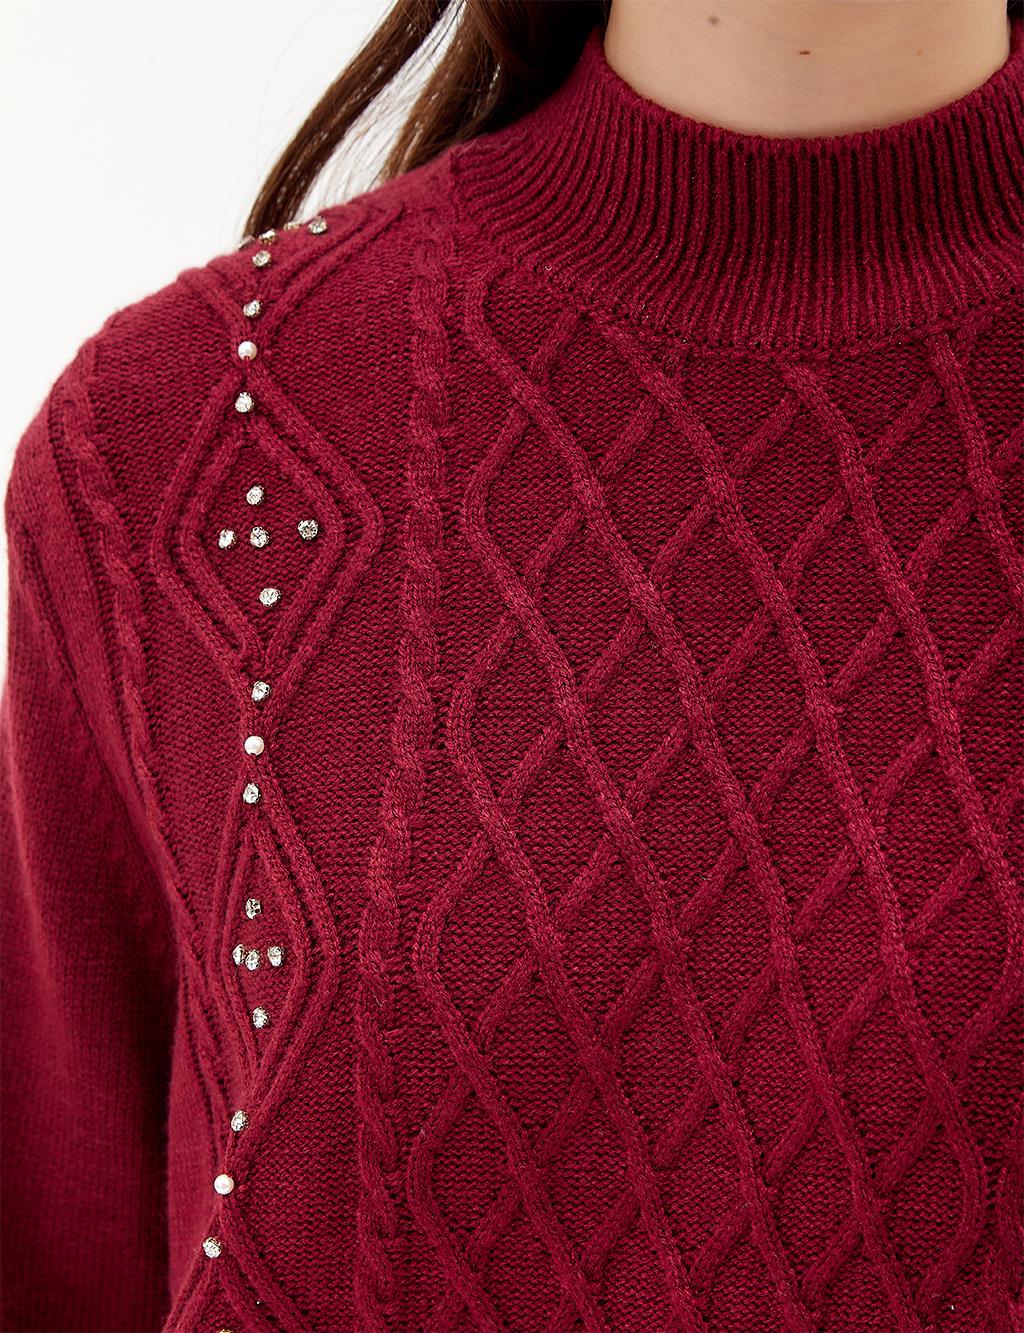 Rhinestone Knitwear Tunic Burgundy